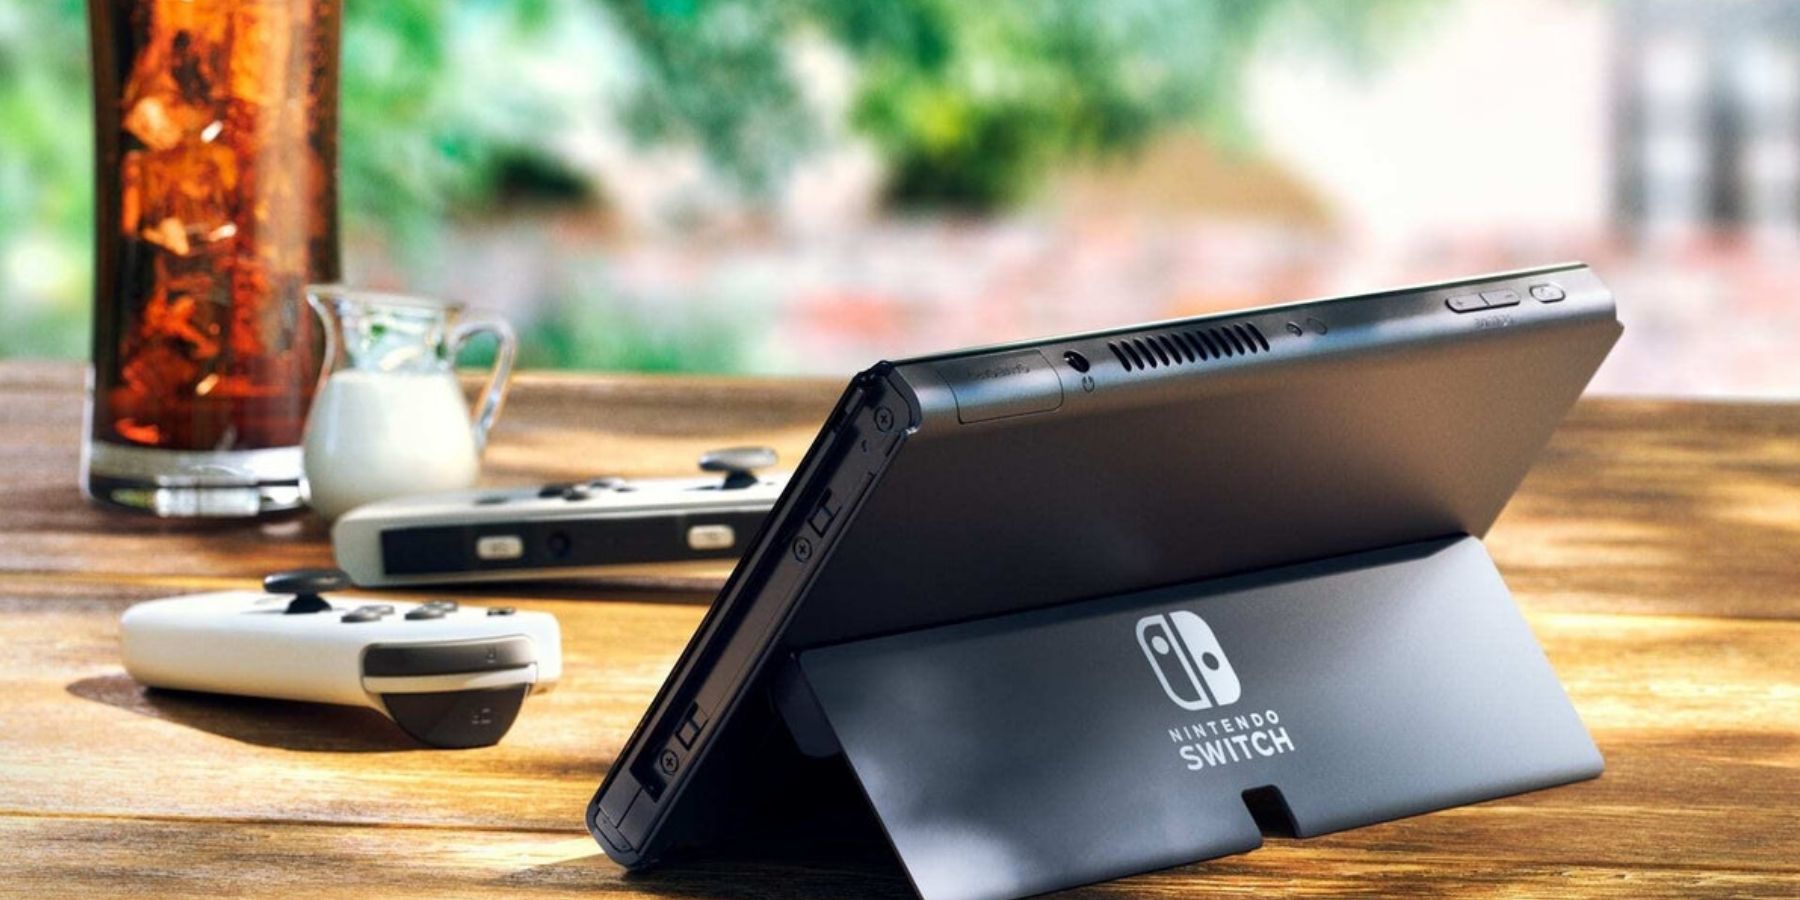 Nintendo의 OLED 스위치는 원래 4K 기능을 갖을 예정이었습니다.